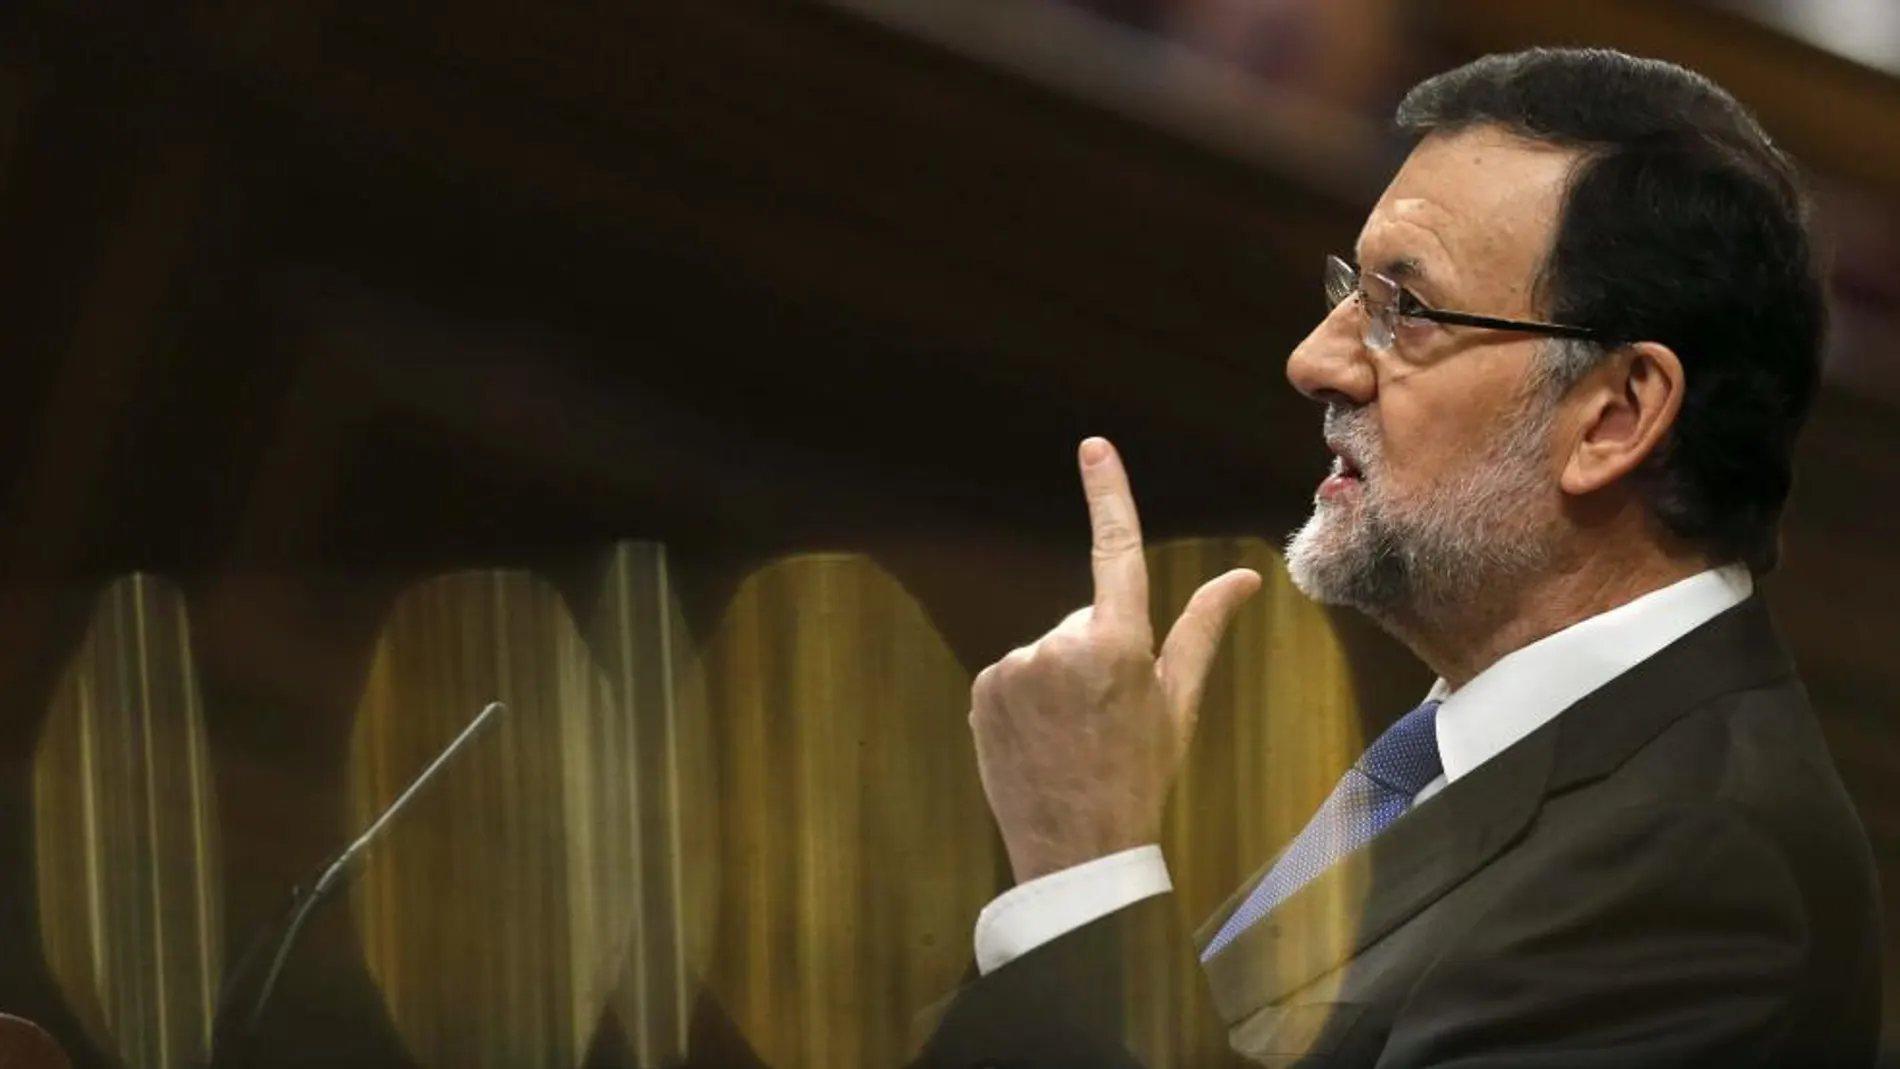 El presidente del Gobierno, Mariano Rajoy, durante su intervención en la segunda jornada del debate sobre el estado de la nación, hoy en el Congreso de los Diputados